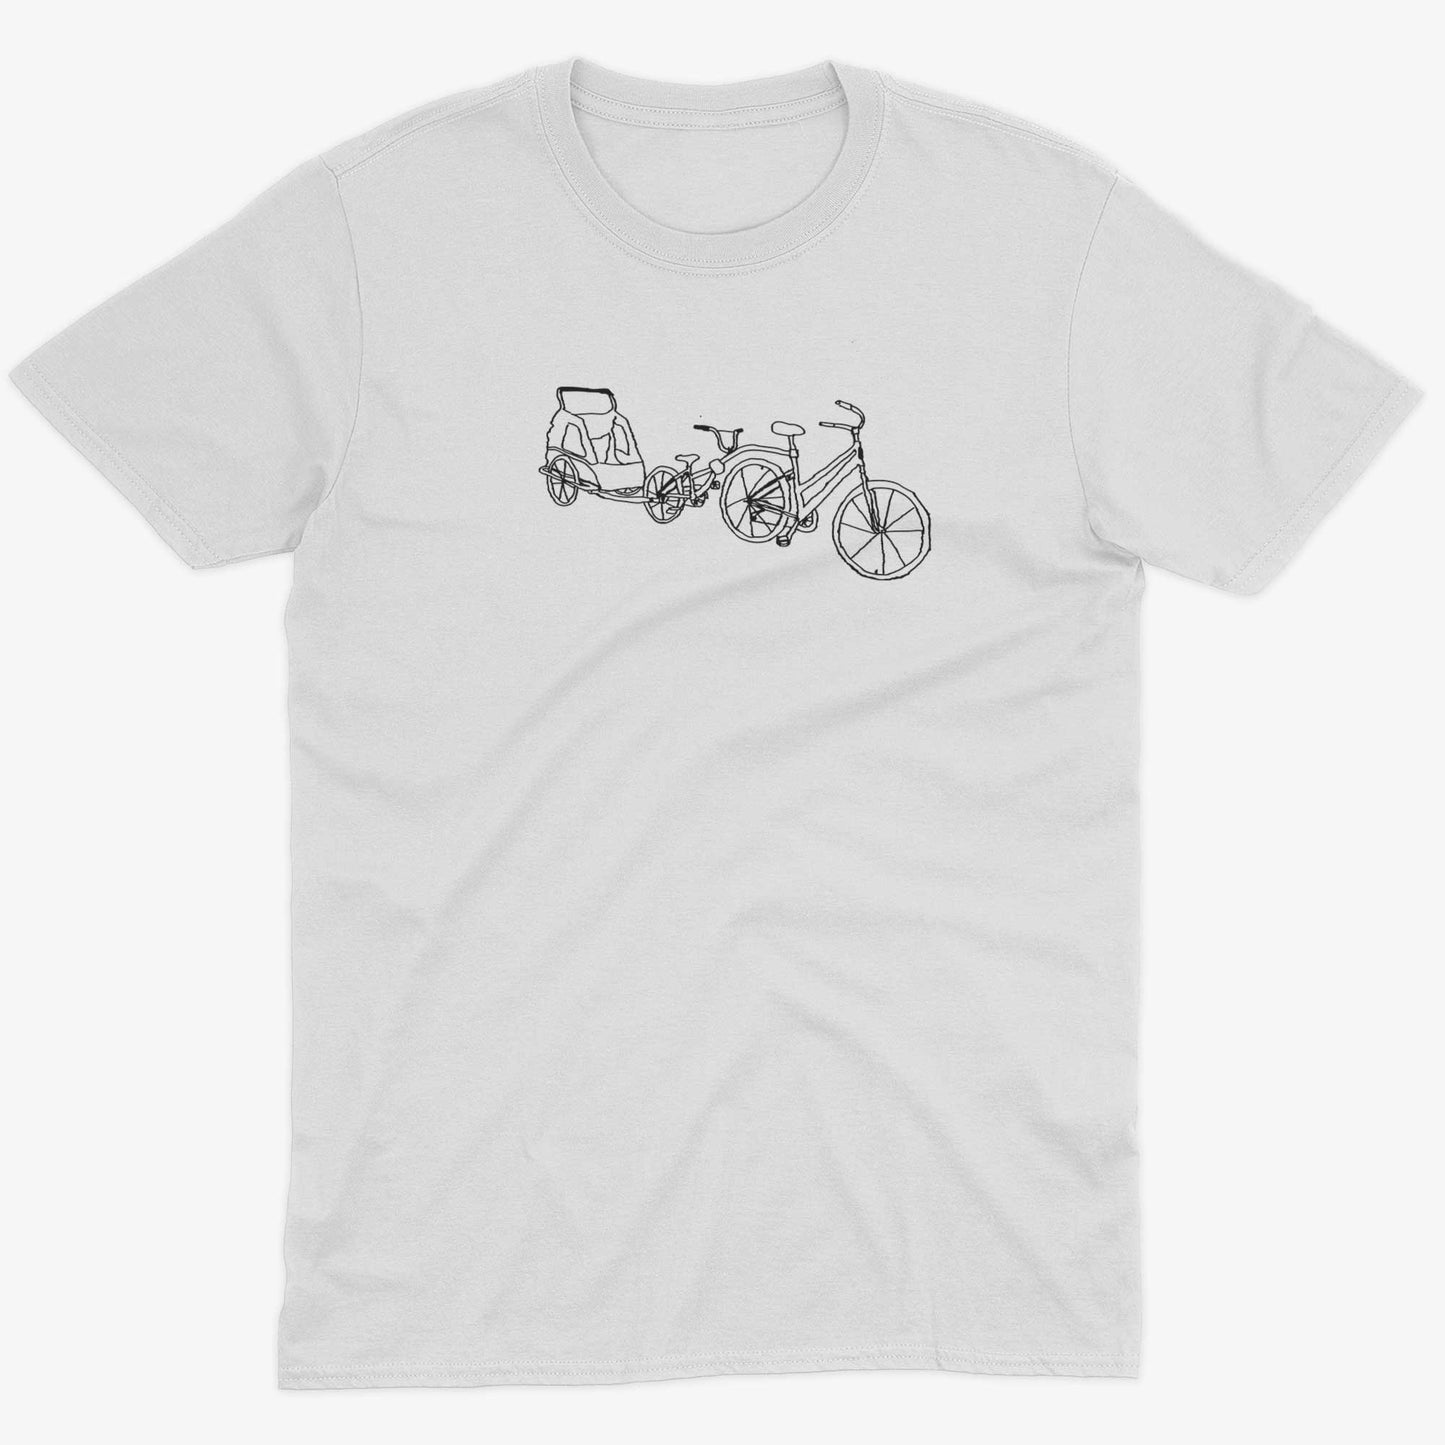 Family Bike Caravan Unisex Or Women's Cotton T-shirt-White-Unisex